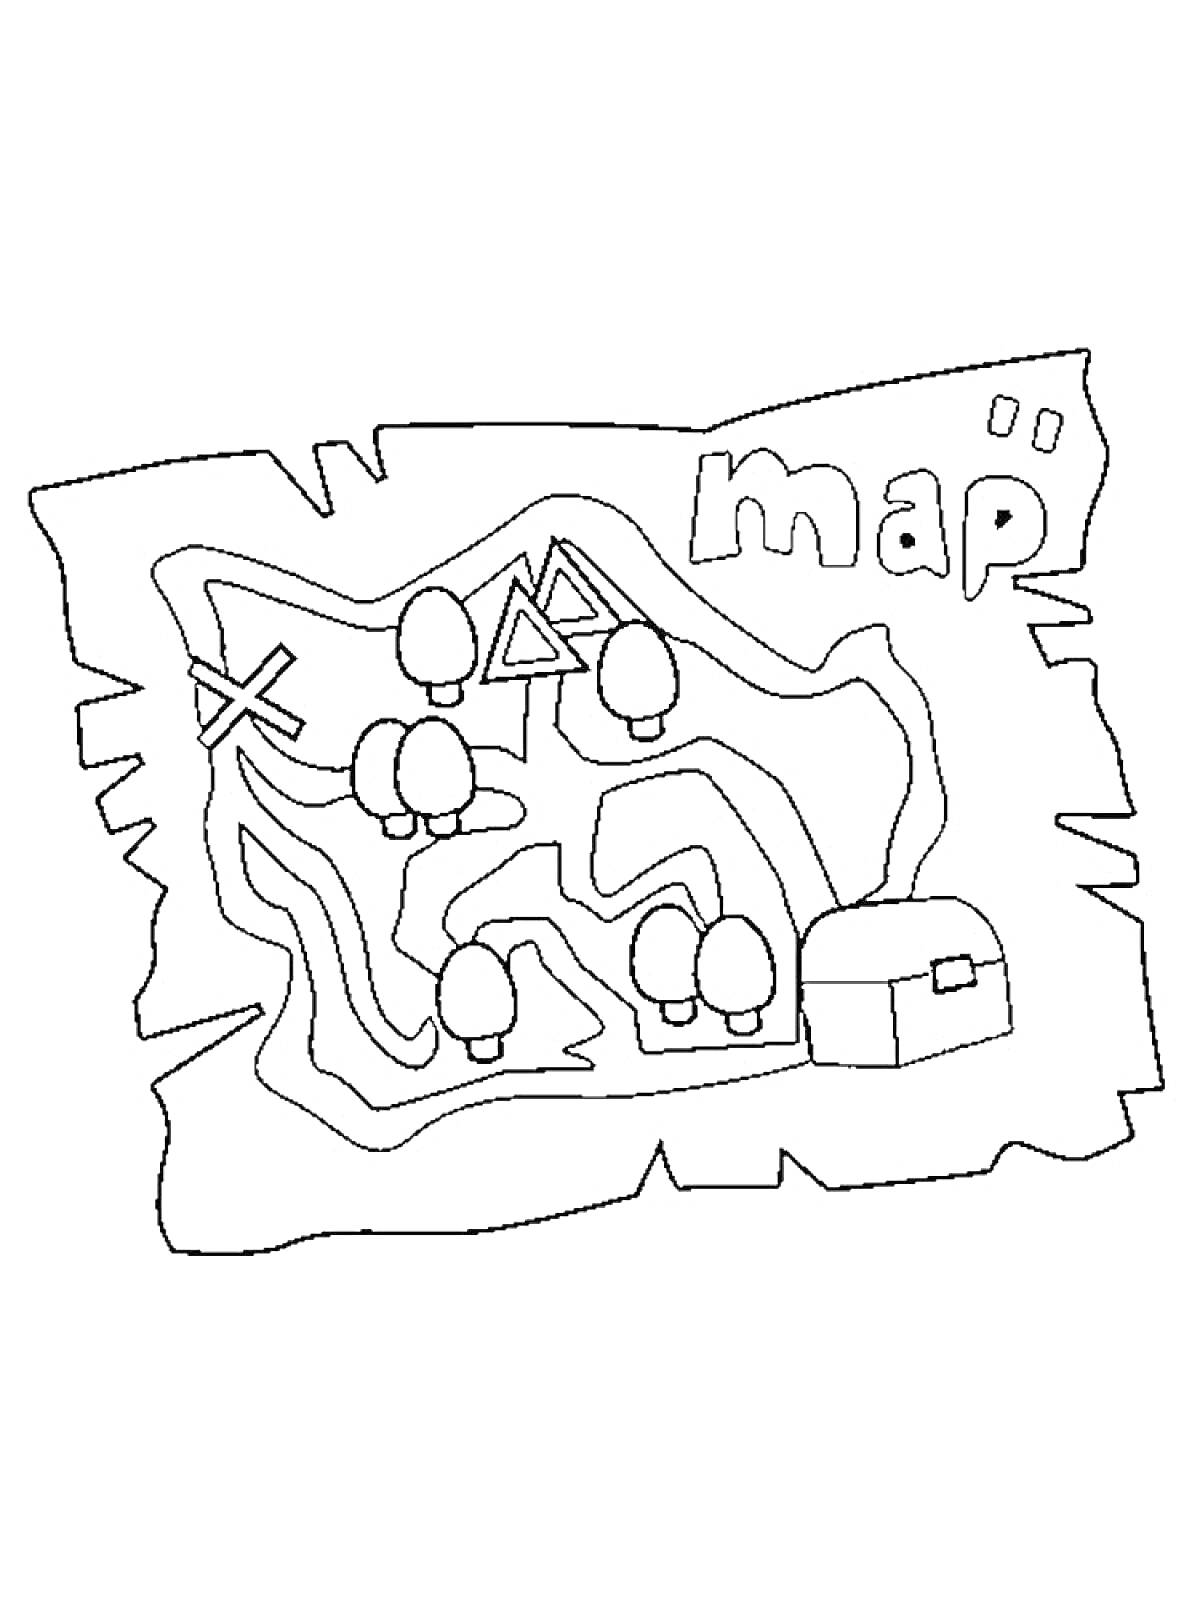 Раскраска Карта сокровищ с деревьями, крестом, треугольниками, сундуком и надписью 